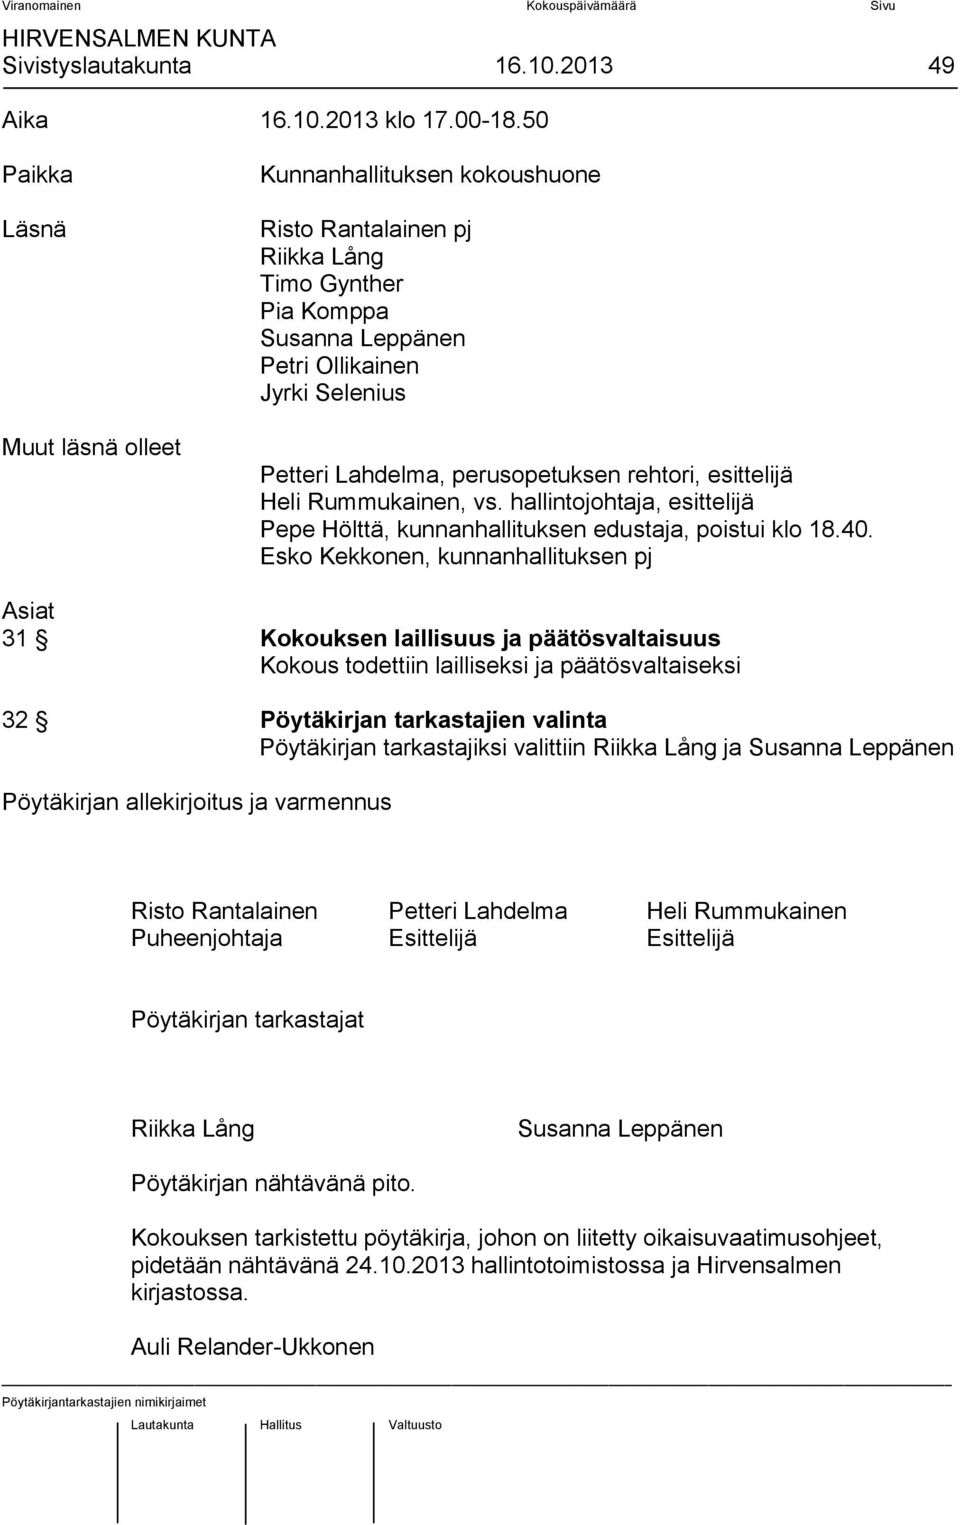 perusopetuksen rehtori, esittelijä Heli Rummukainen, vs. hallintojohtaja, esittelijä Pepe Hölttä, kunnanhallituksen edustaja, poistui klo 18.40.